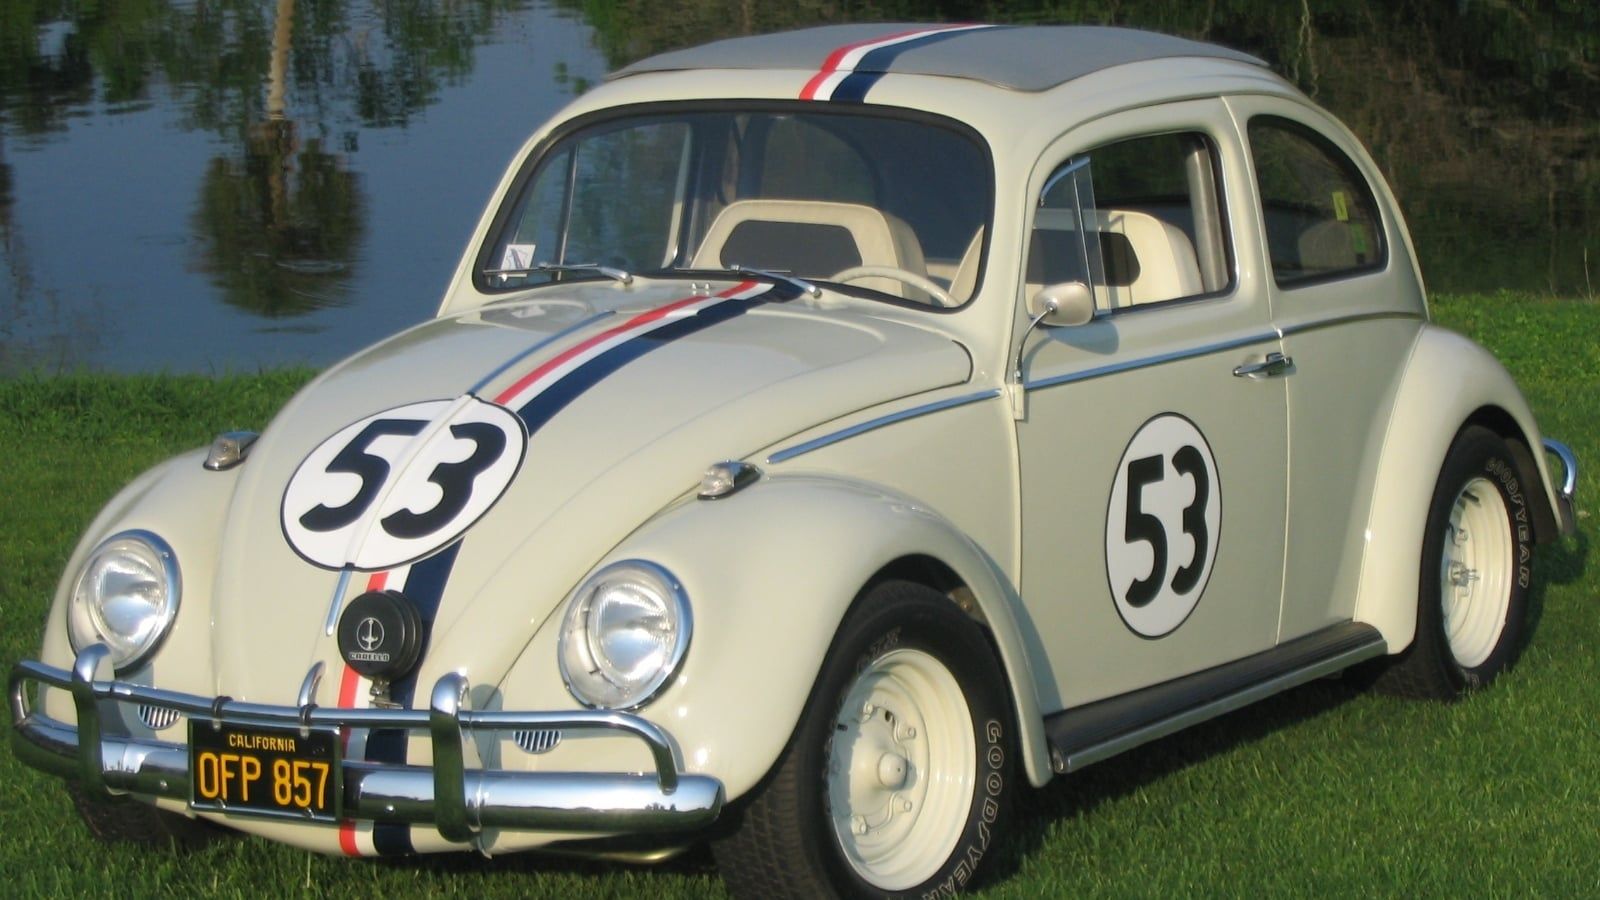 Cubierta de Herbie, the Love Bug